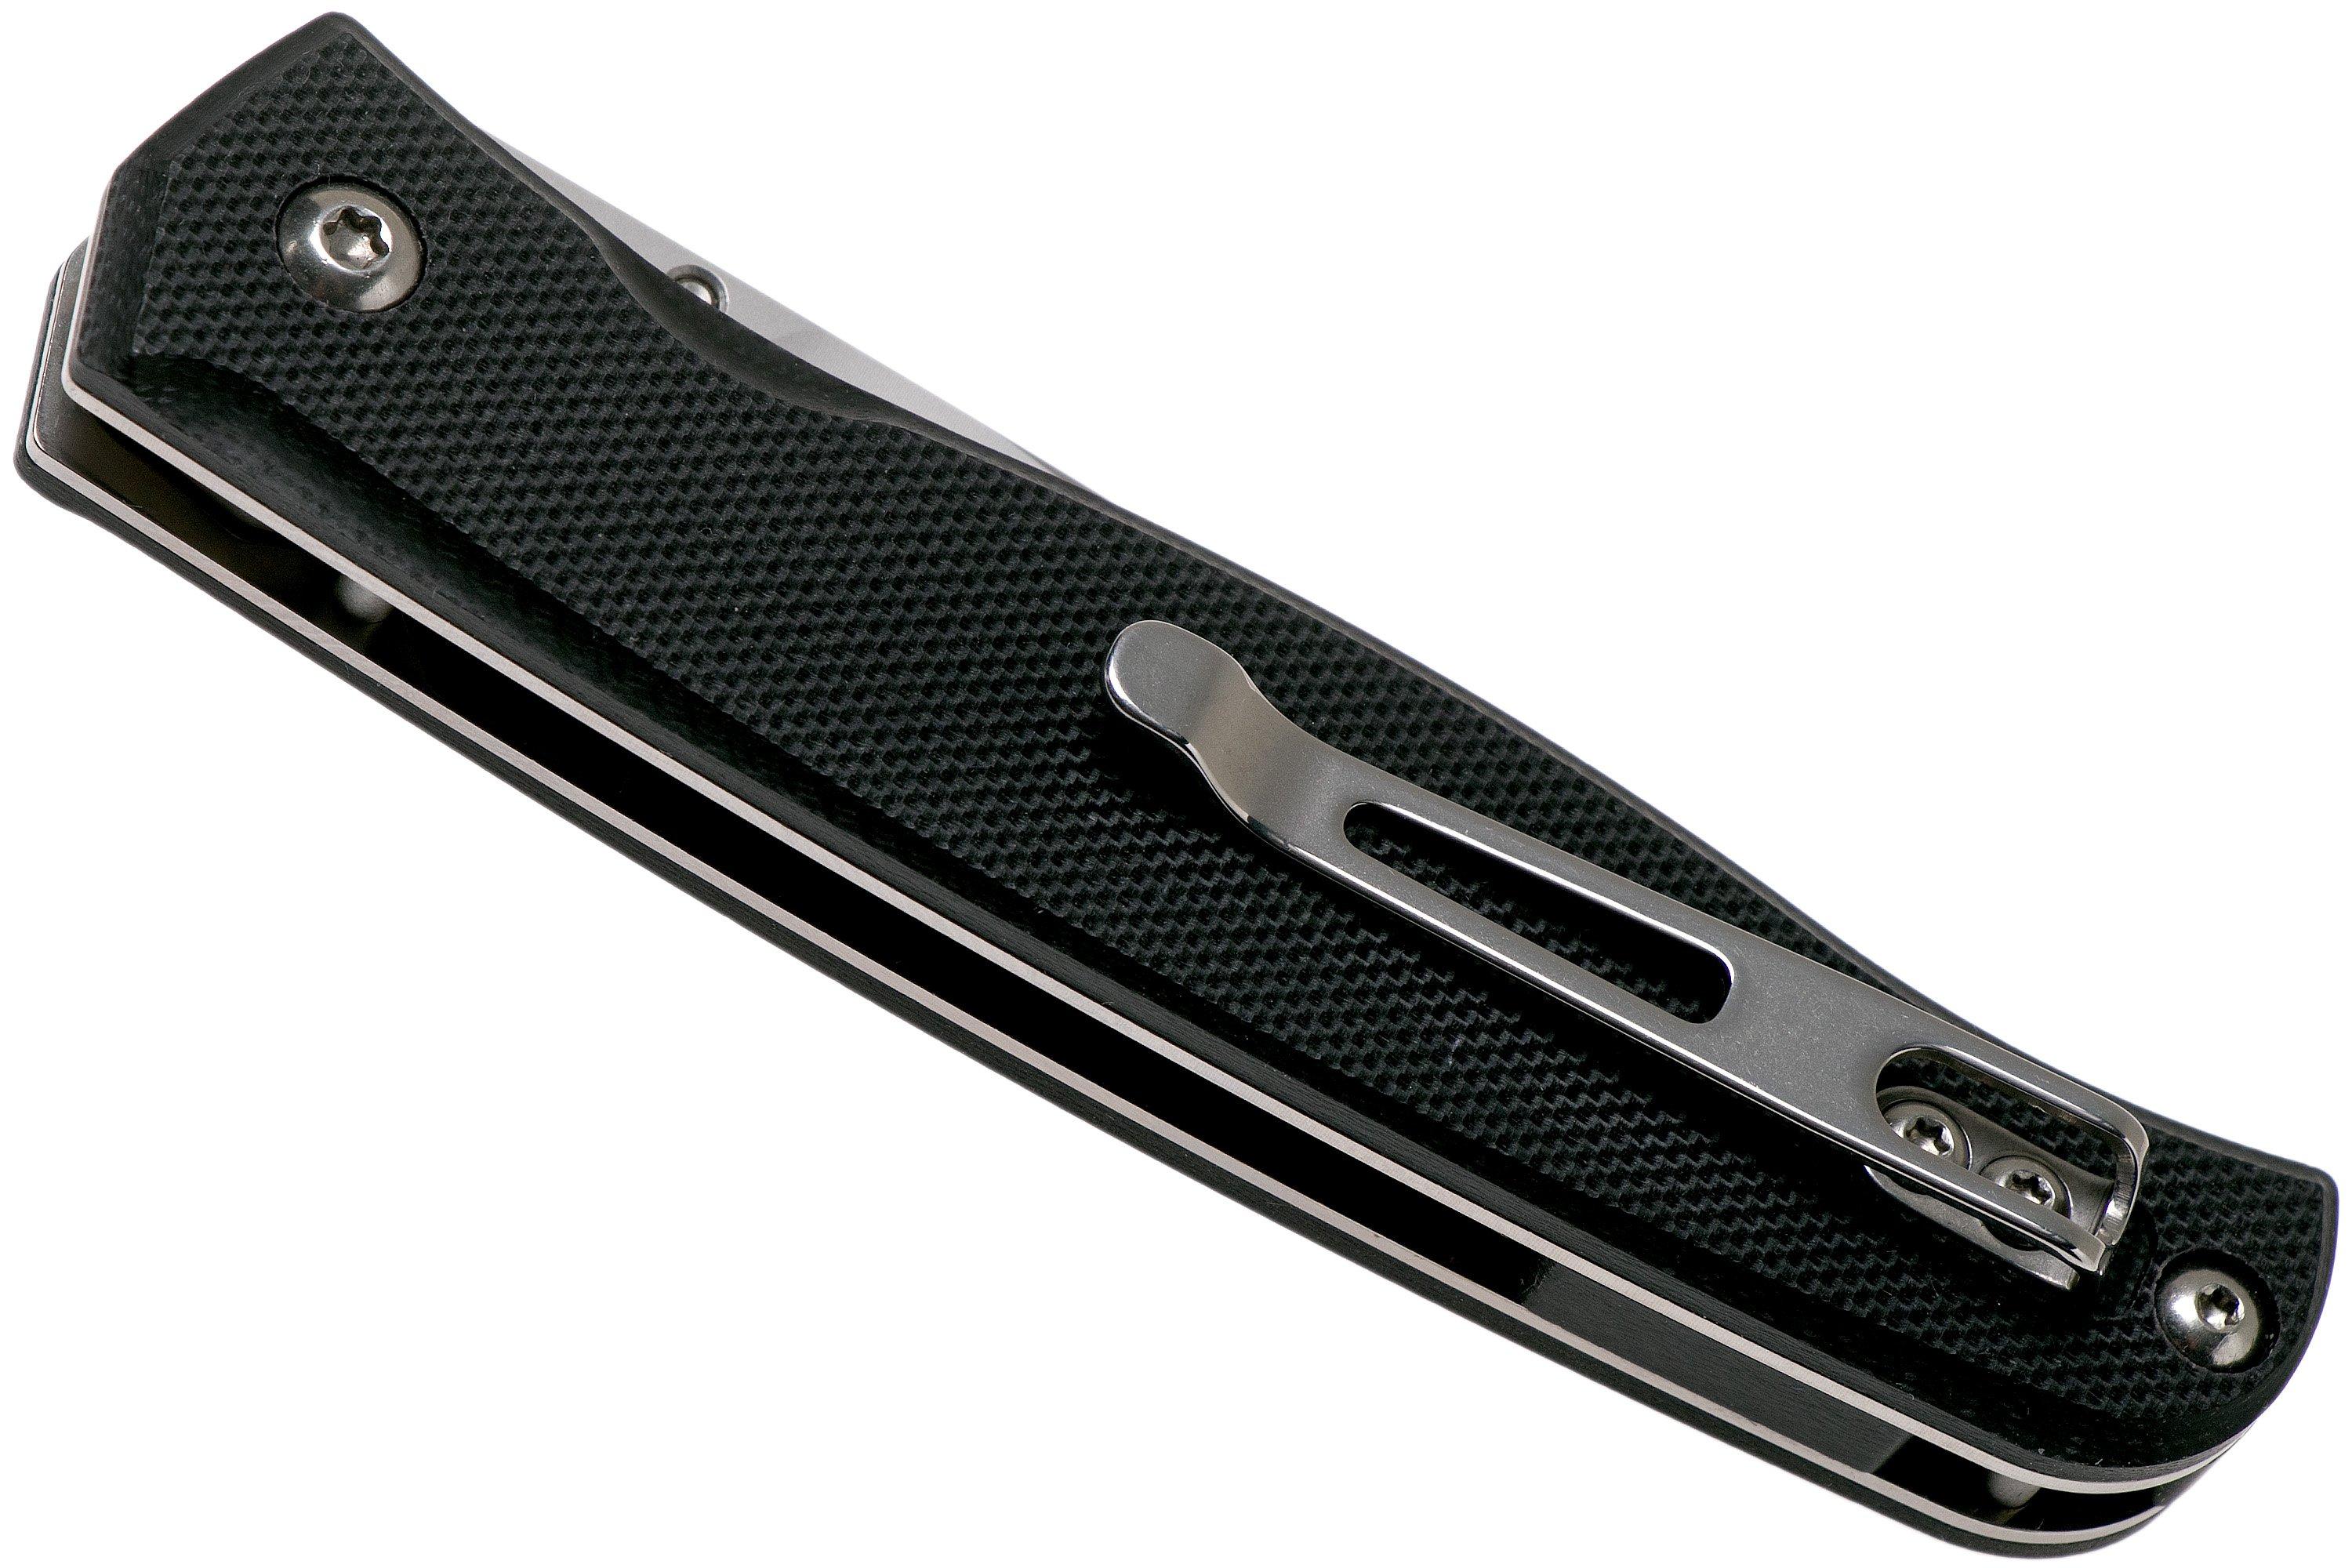  P661-B Black coltello da tasca | Fare acquisti vantaggiosamente .